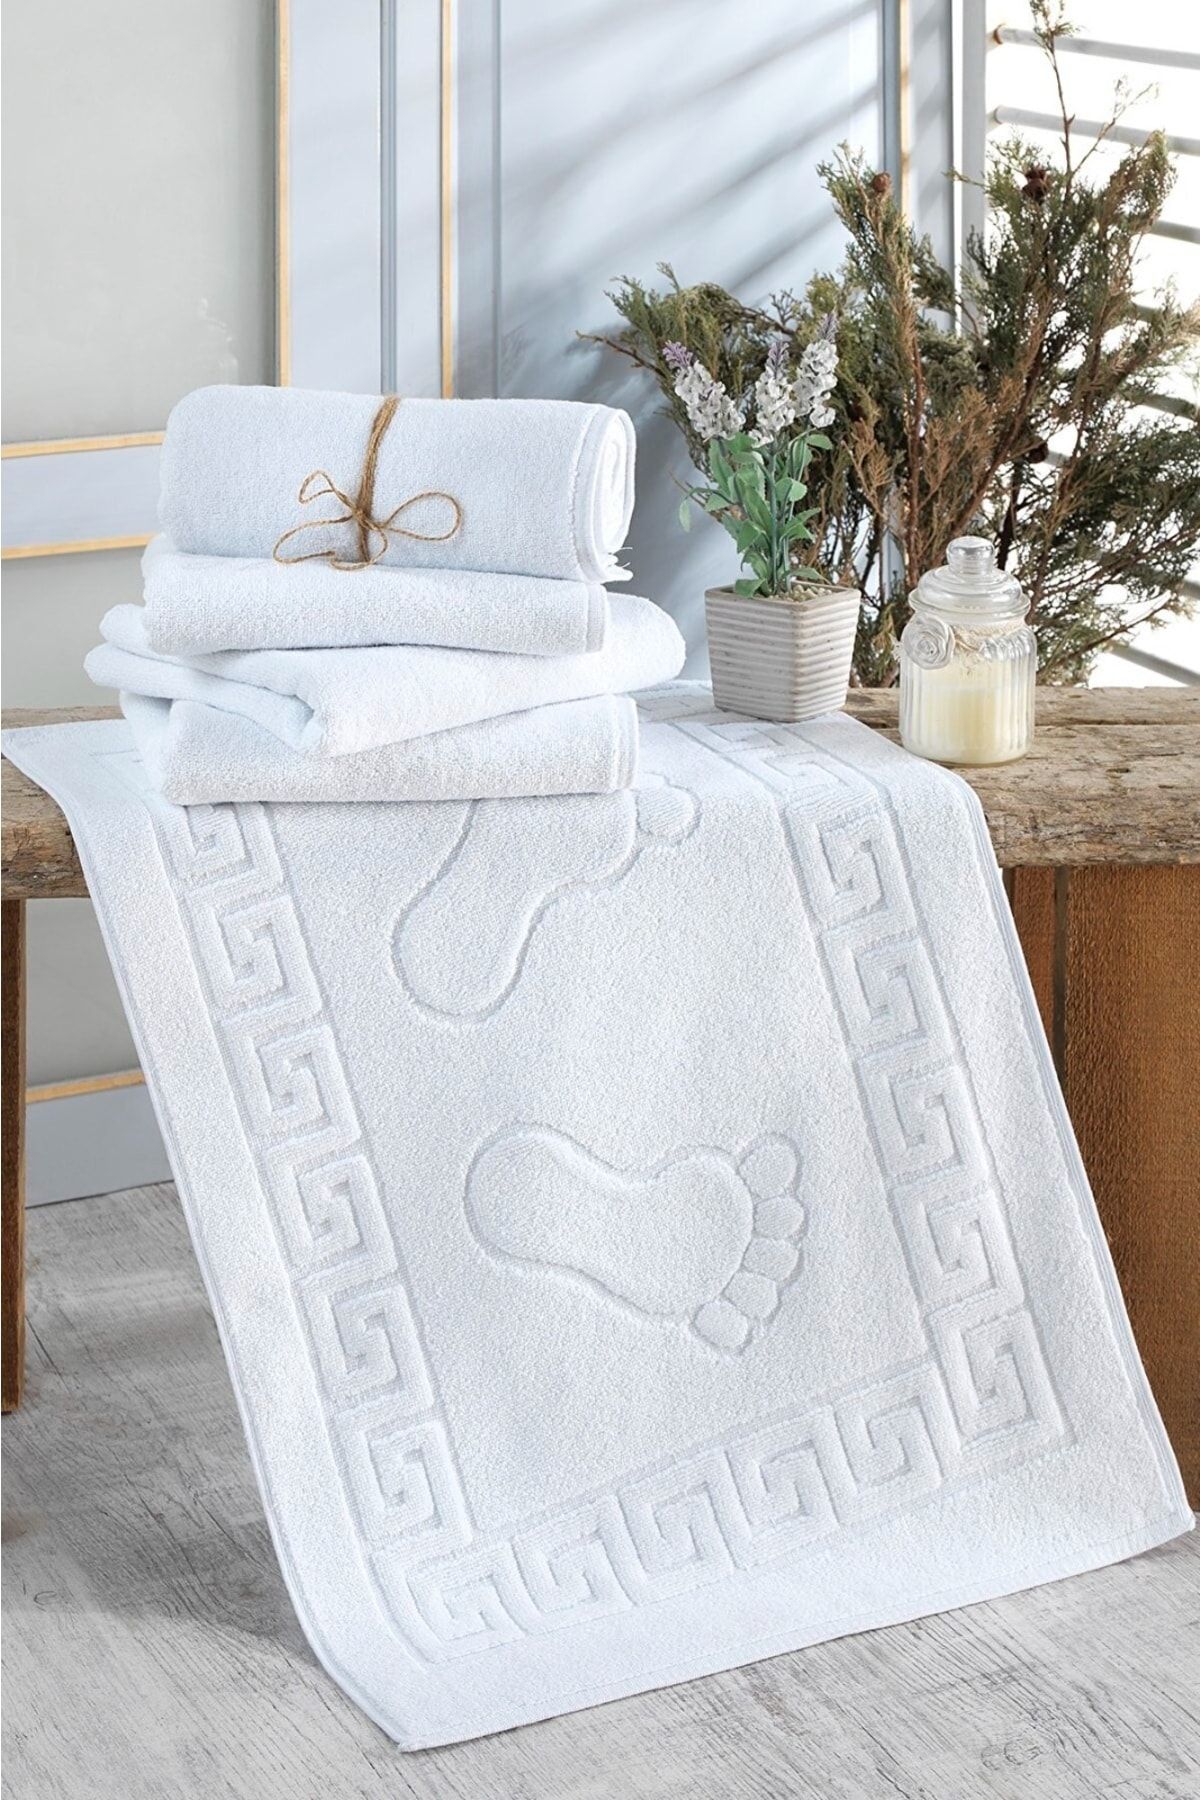 Mariva home Otel Ayak Havlusu 1 Adet Beyaz renk Banyo Paspası 50*70cm pamuklu havlu